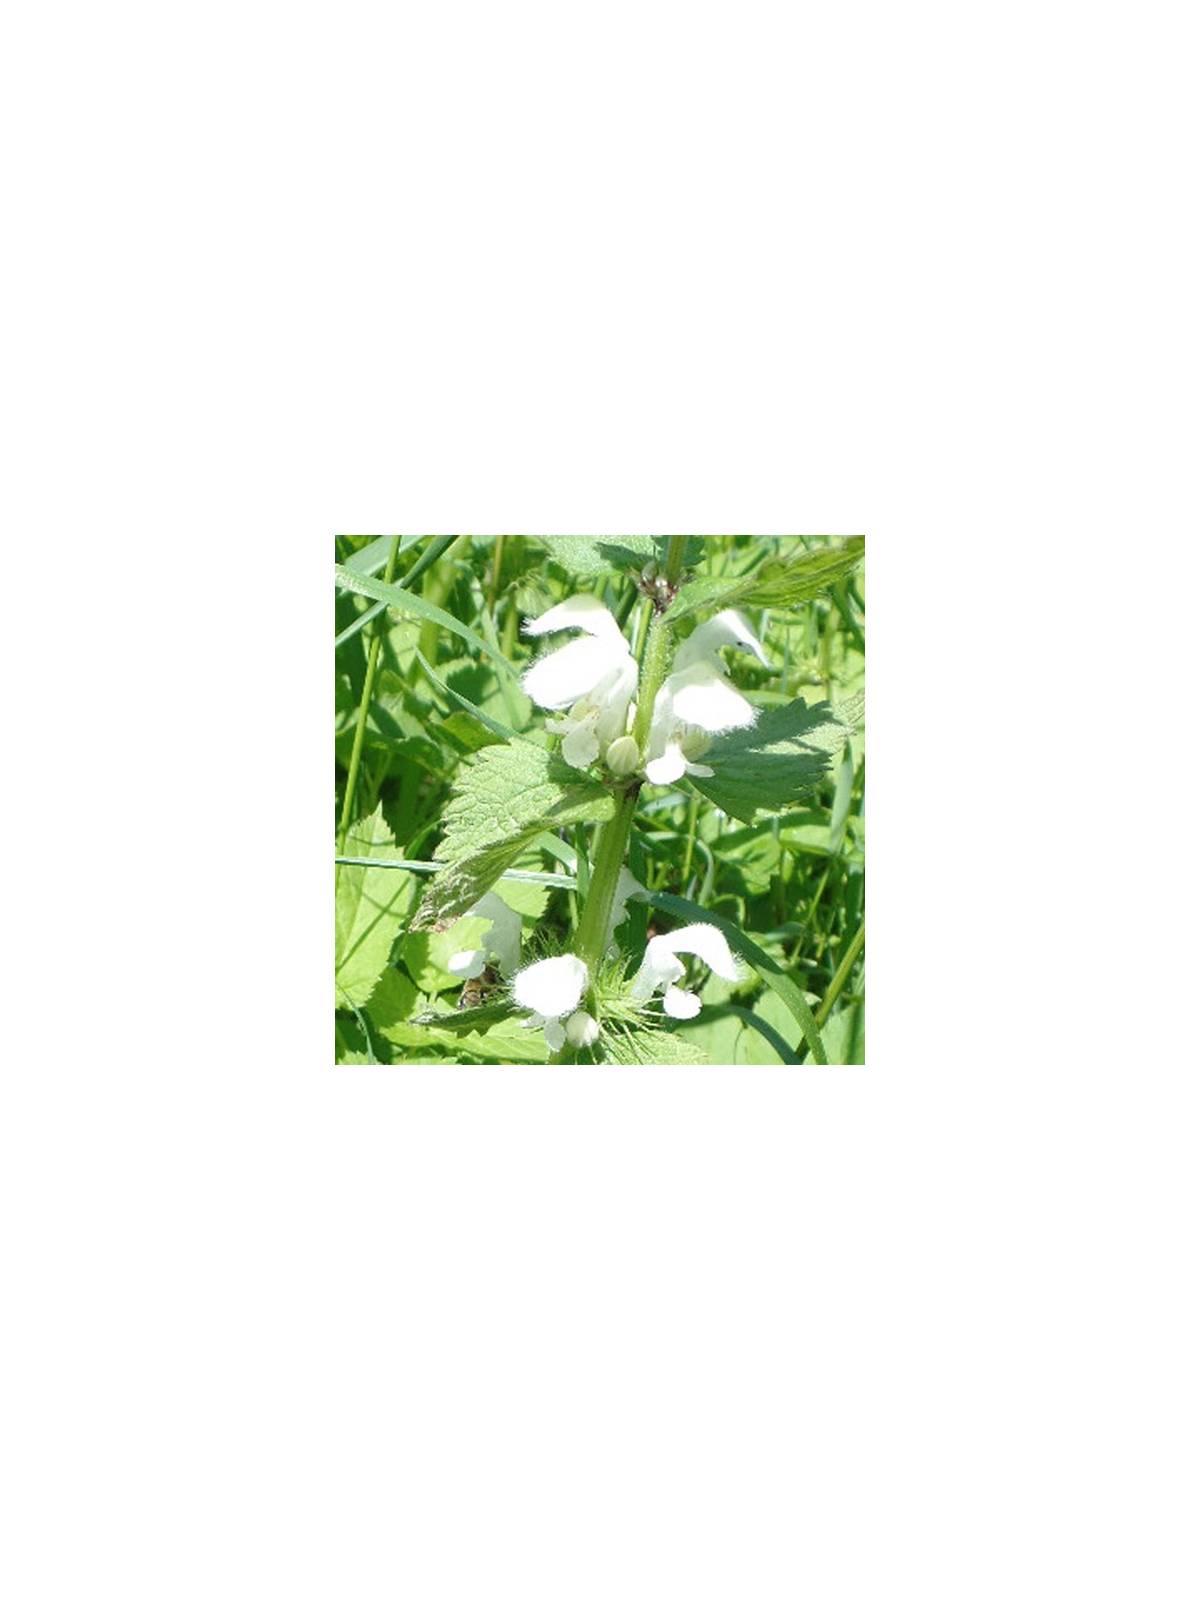 WHITE DEADNETTLE Lamium album Miracle Essences flower essences